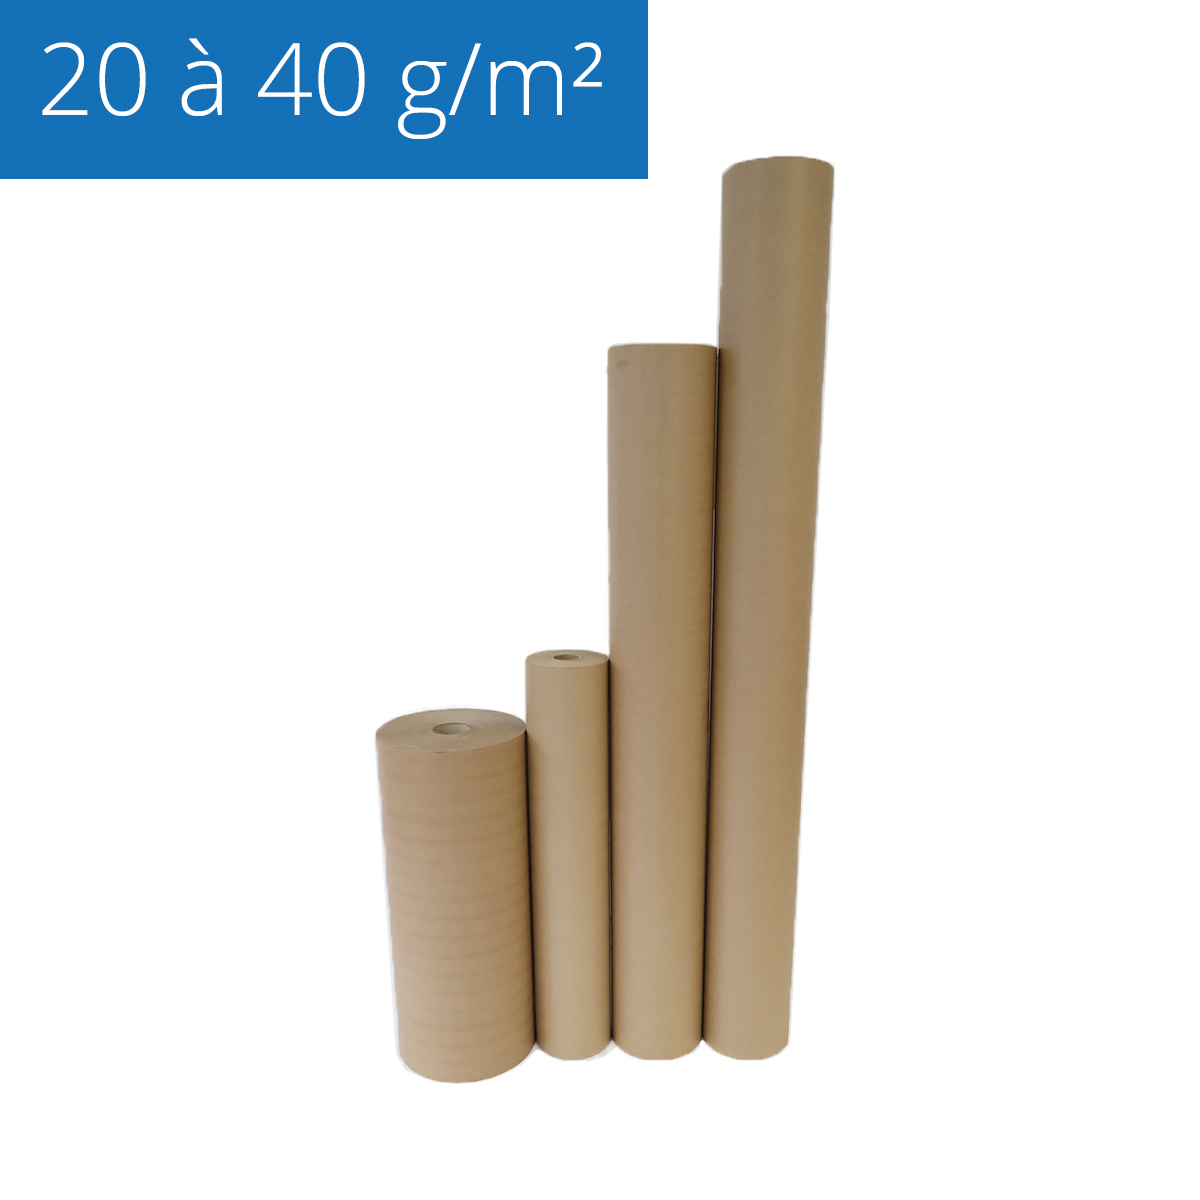 Papier de calage 130 g/m² Papier d'emballage en rouleau - 30 cm ou 50